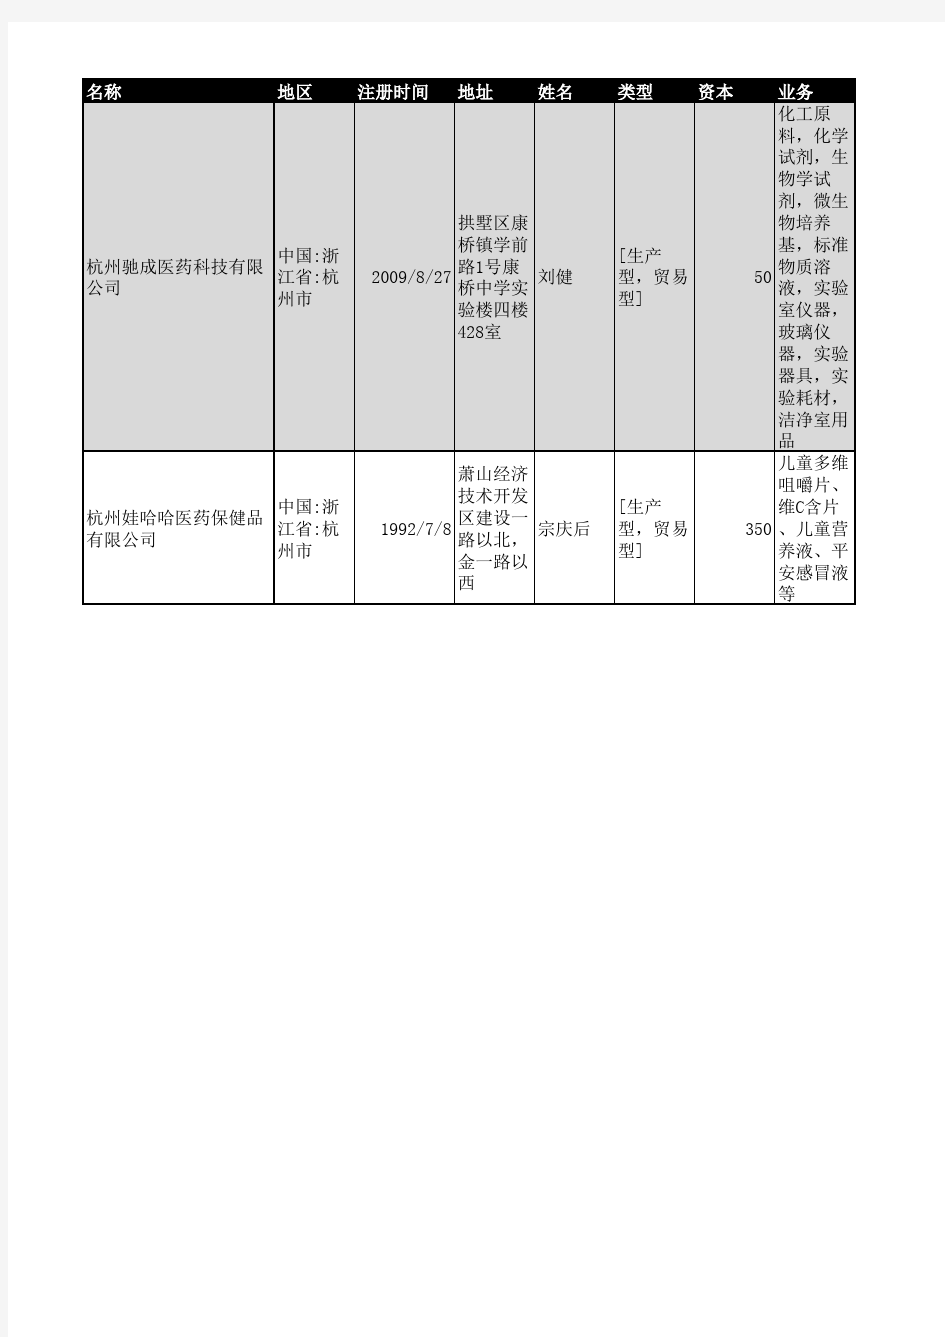 2018年杭州市医药行业企业名录1662家